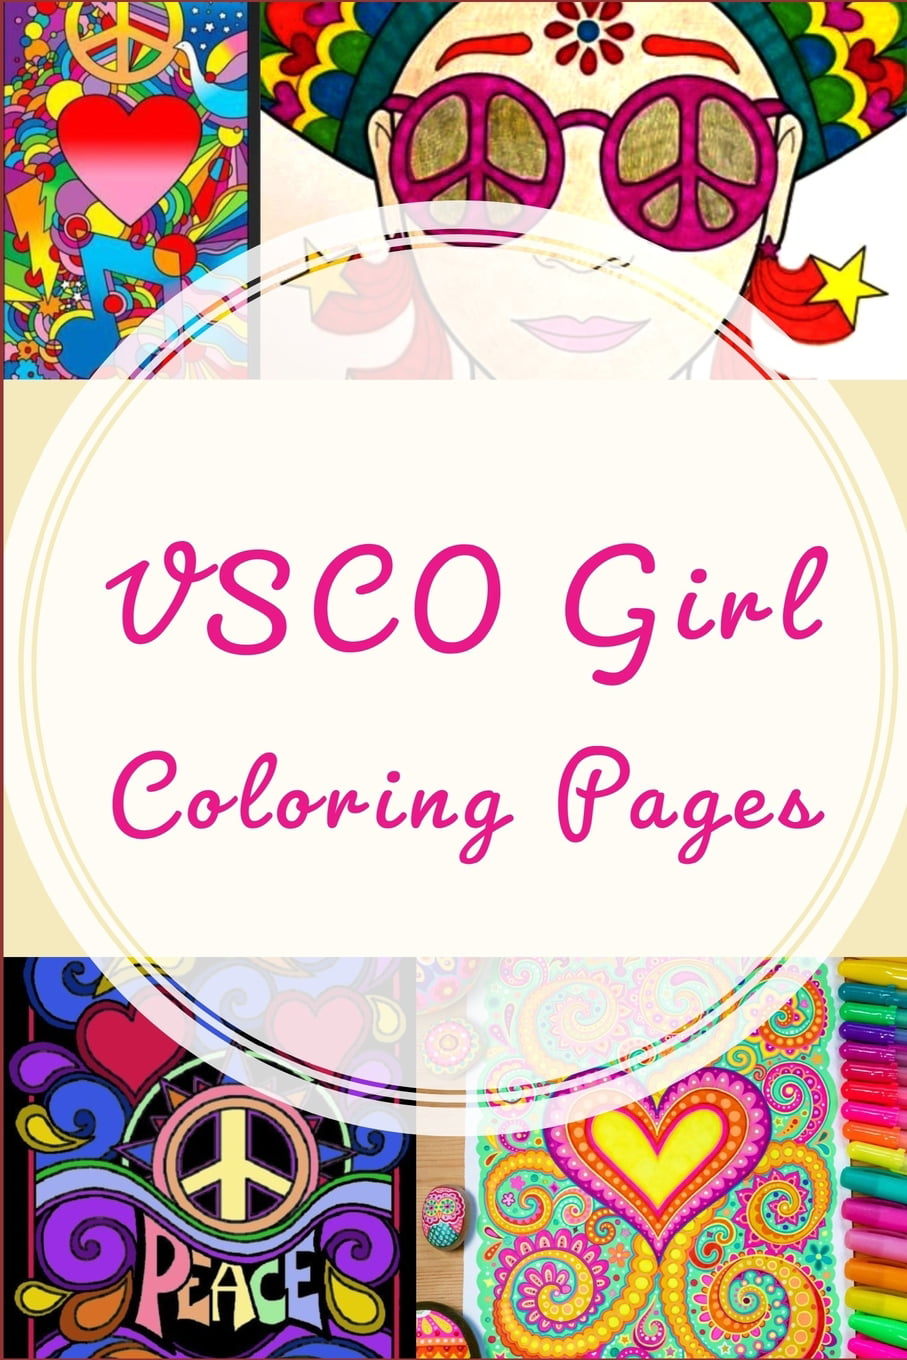 VSCO Girl Coloring Pages: vscogirl, vsco, vscocam, like ...